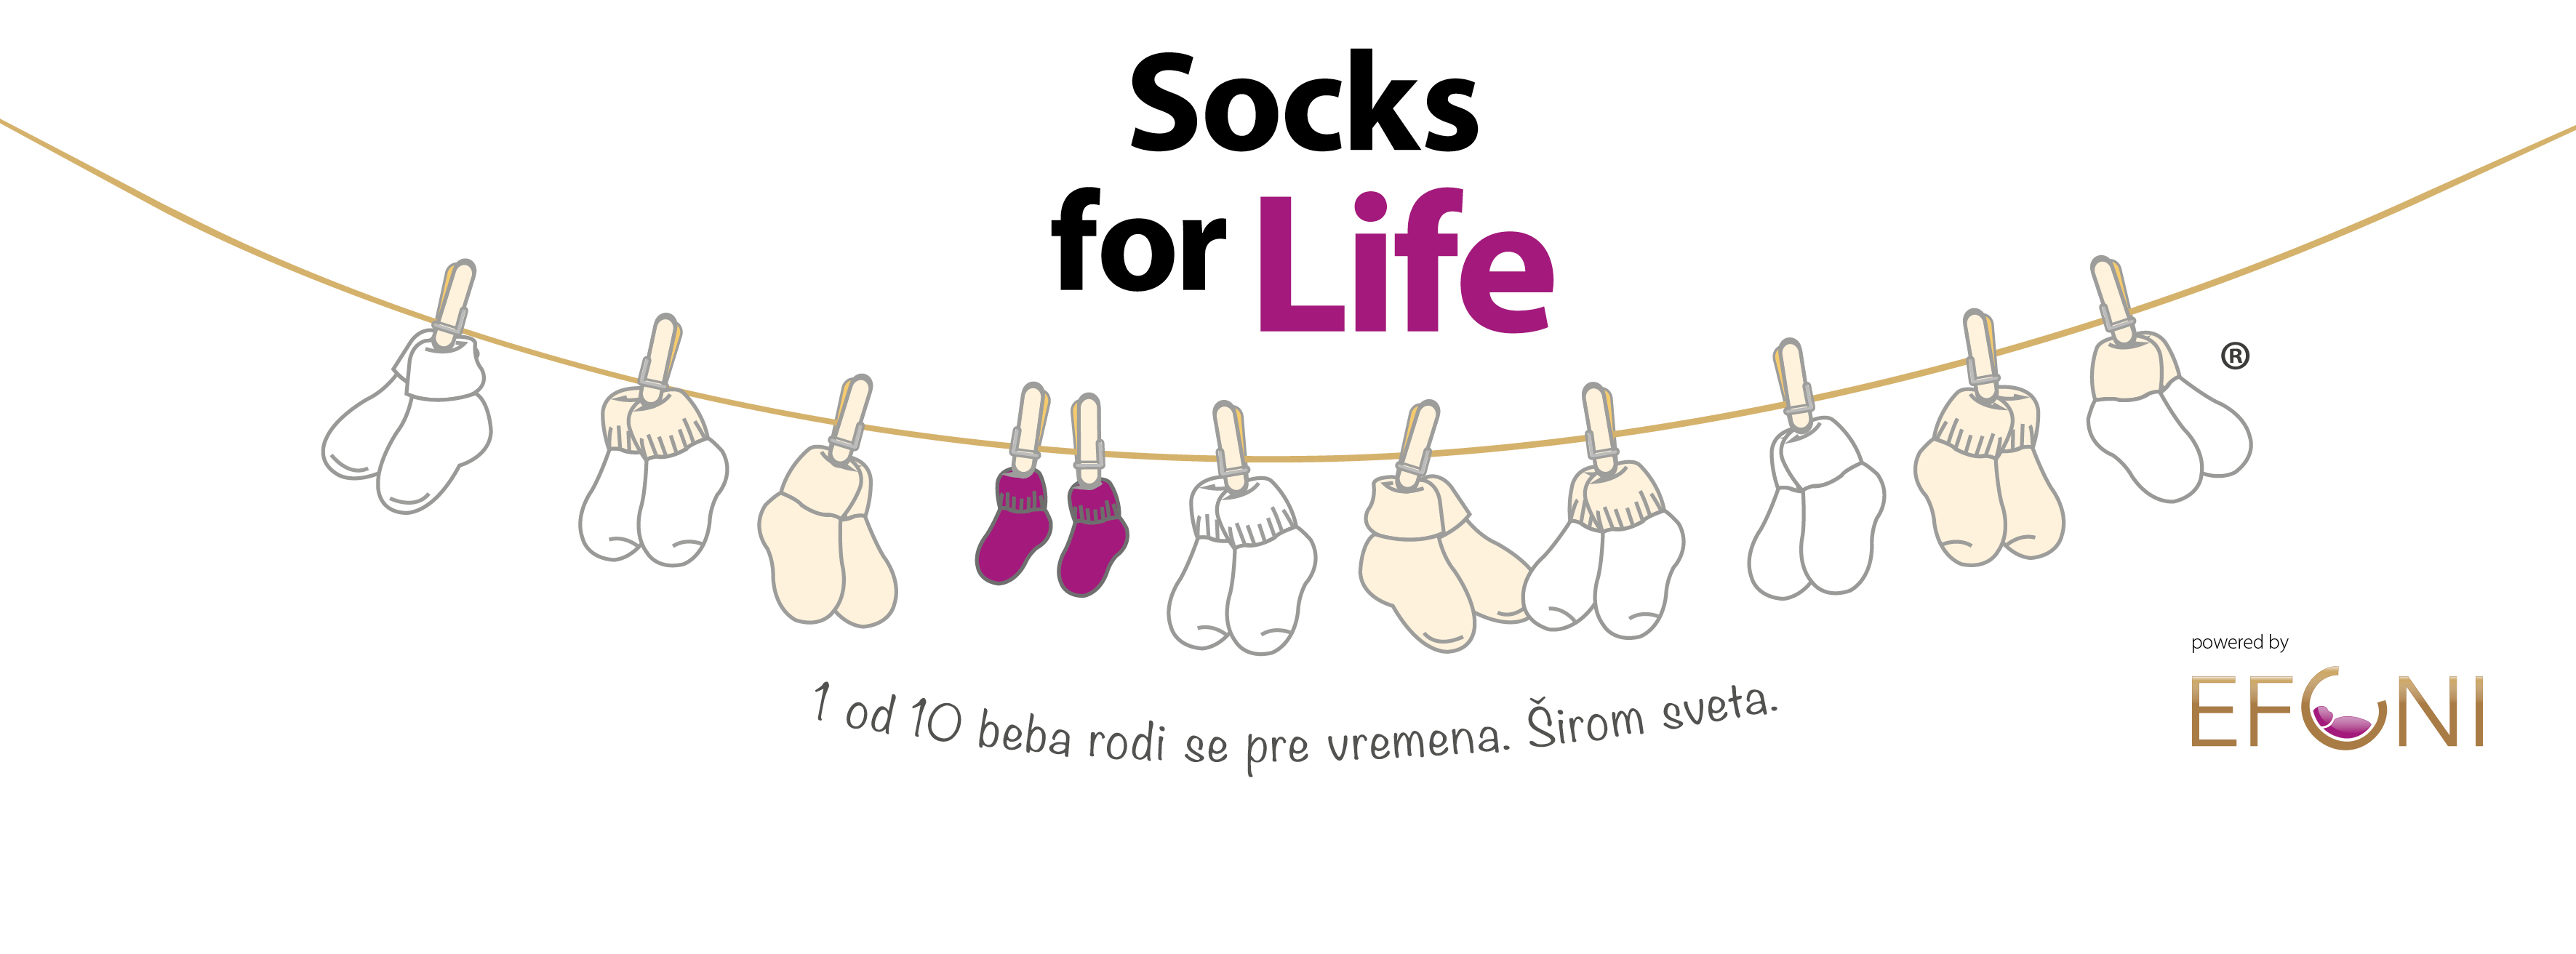 Socks for Life cover